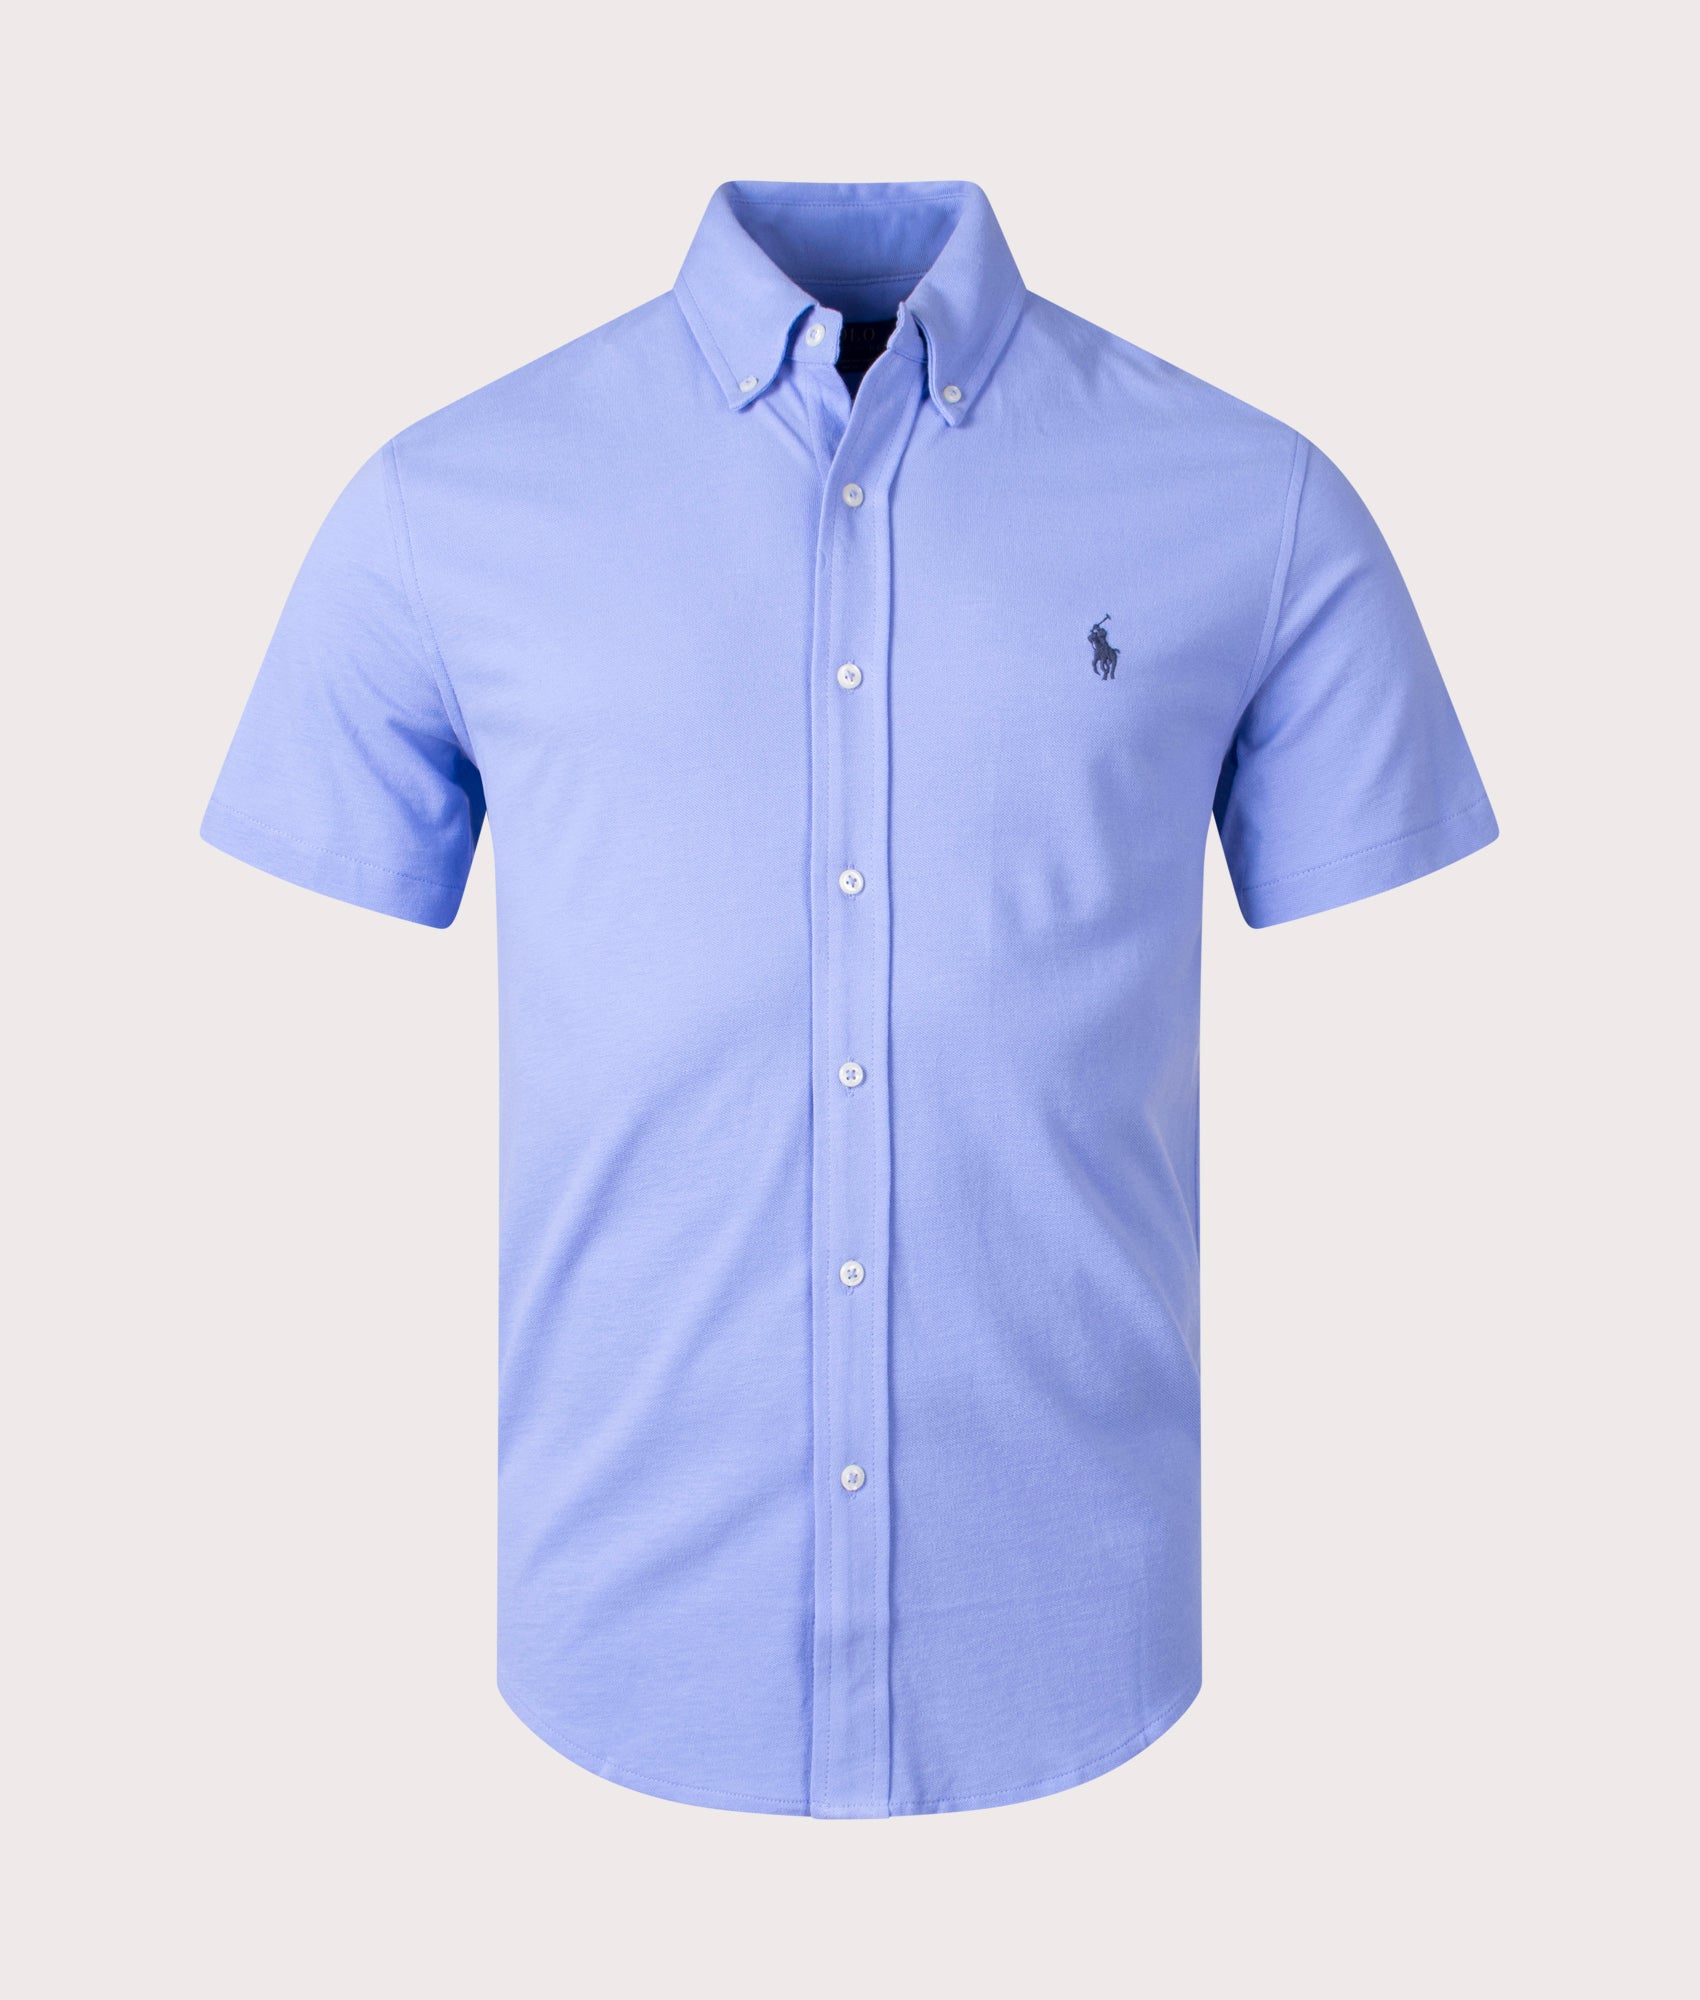 Featherweight Mesh Short Sleeve Shirt Blue | Polo Ralph Lauren | EQVVS